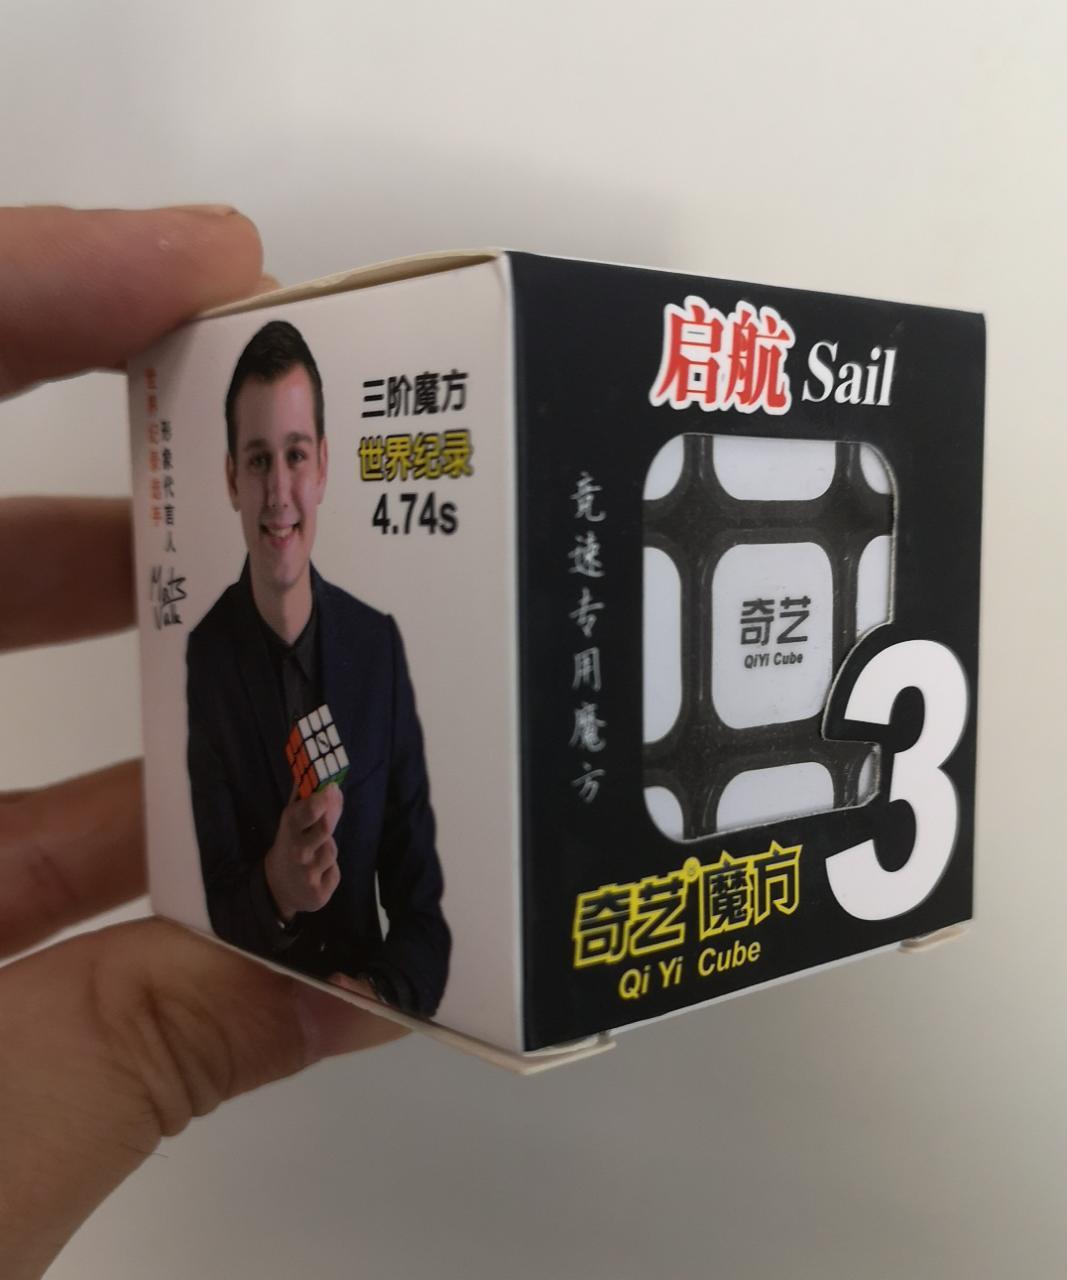 Кубик 3 на 3 Qiyi 3x3x3 куб профессиональный 5,7 см скоростной